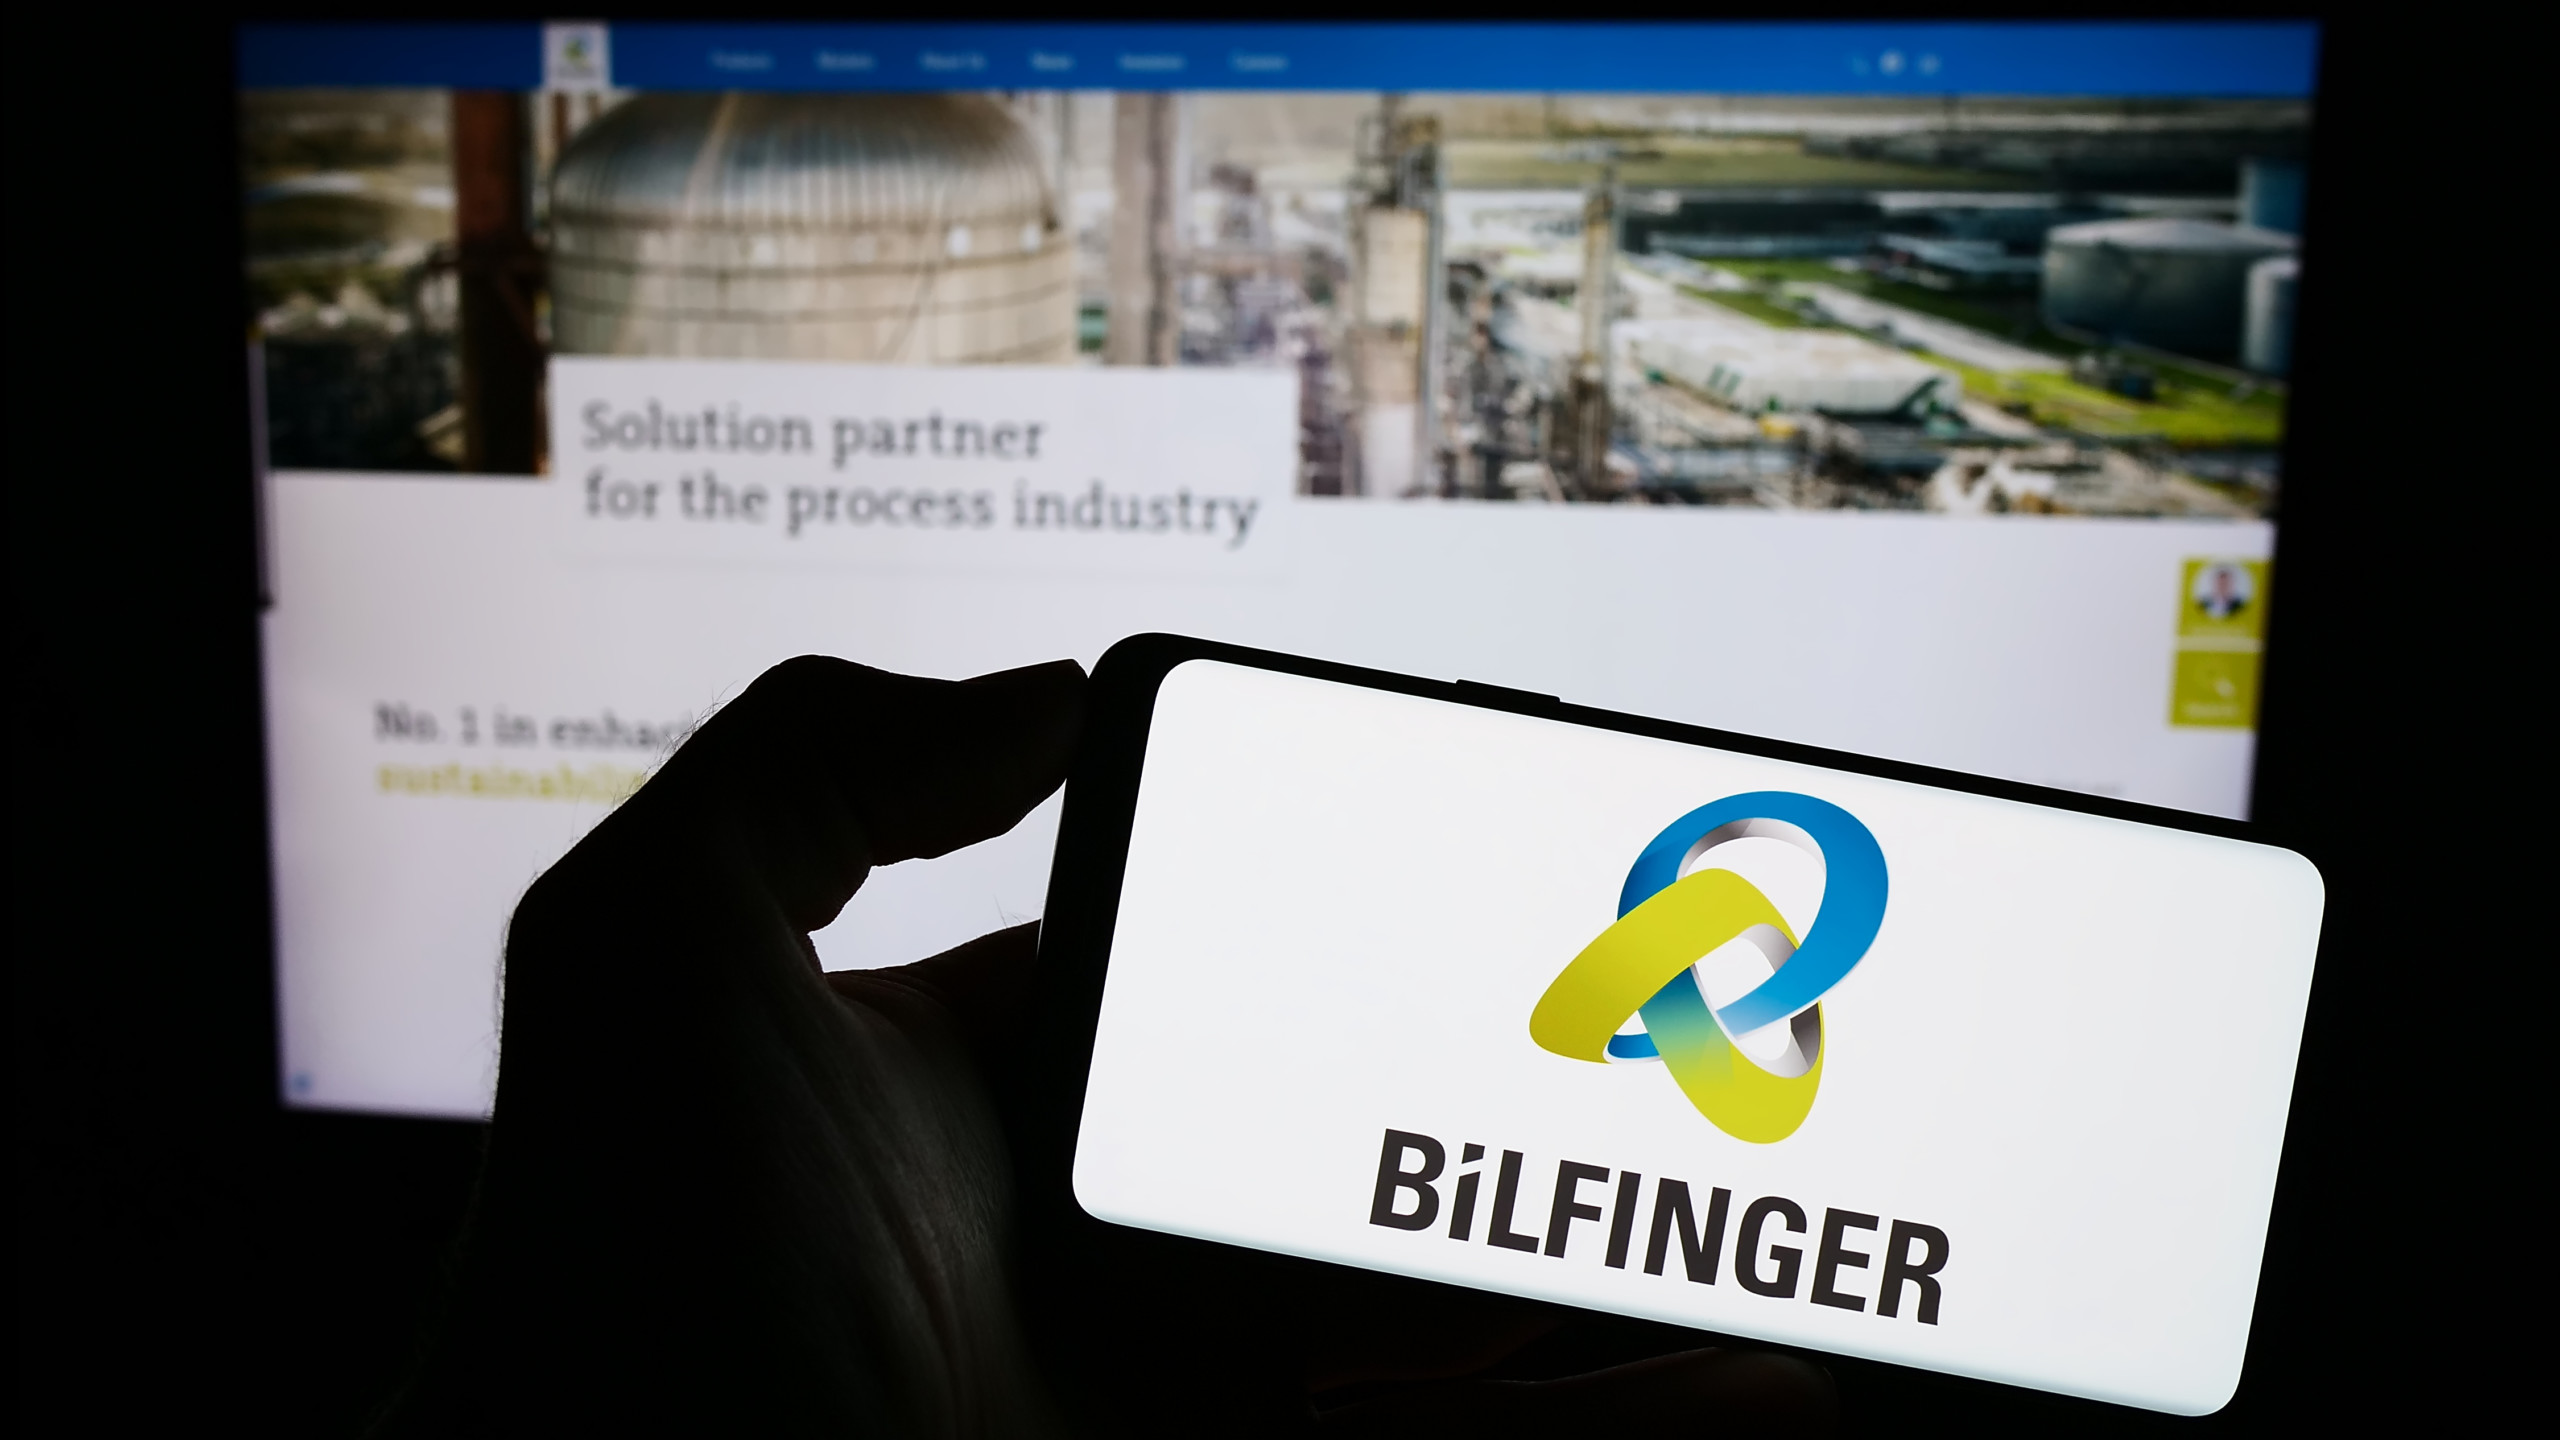 Nebenwerte Research-Blog: Bilfinger ist ein führender Industriedienstleister für die weltweite Prozessindustrie! Die Aktie läuft das 52-Wochenhoch an